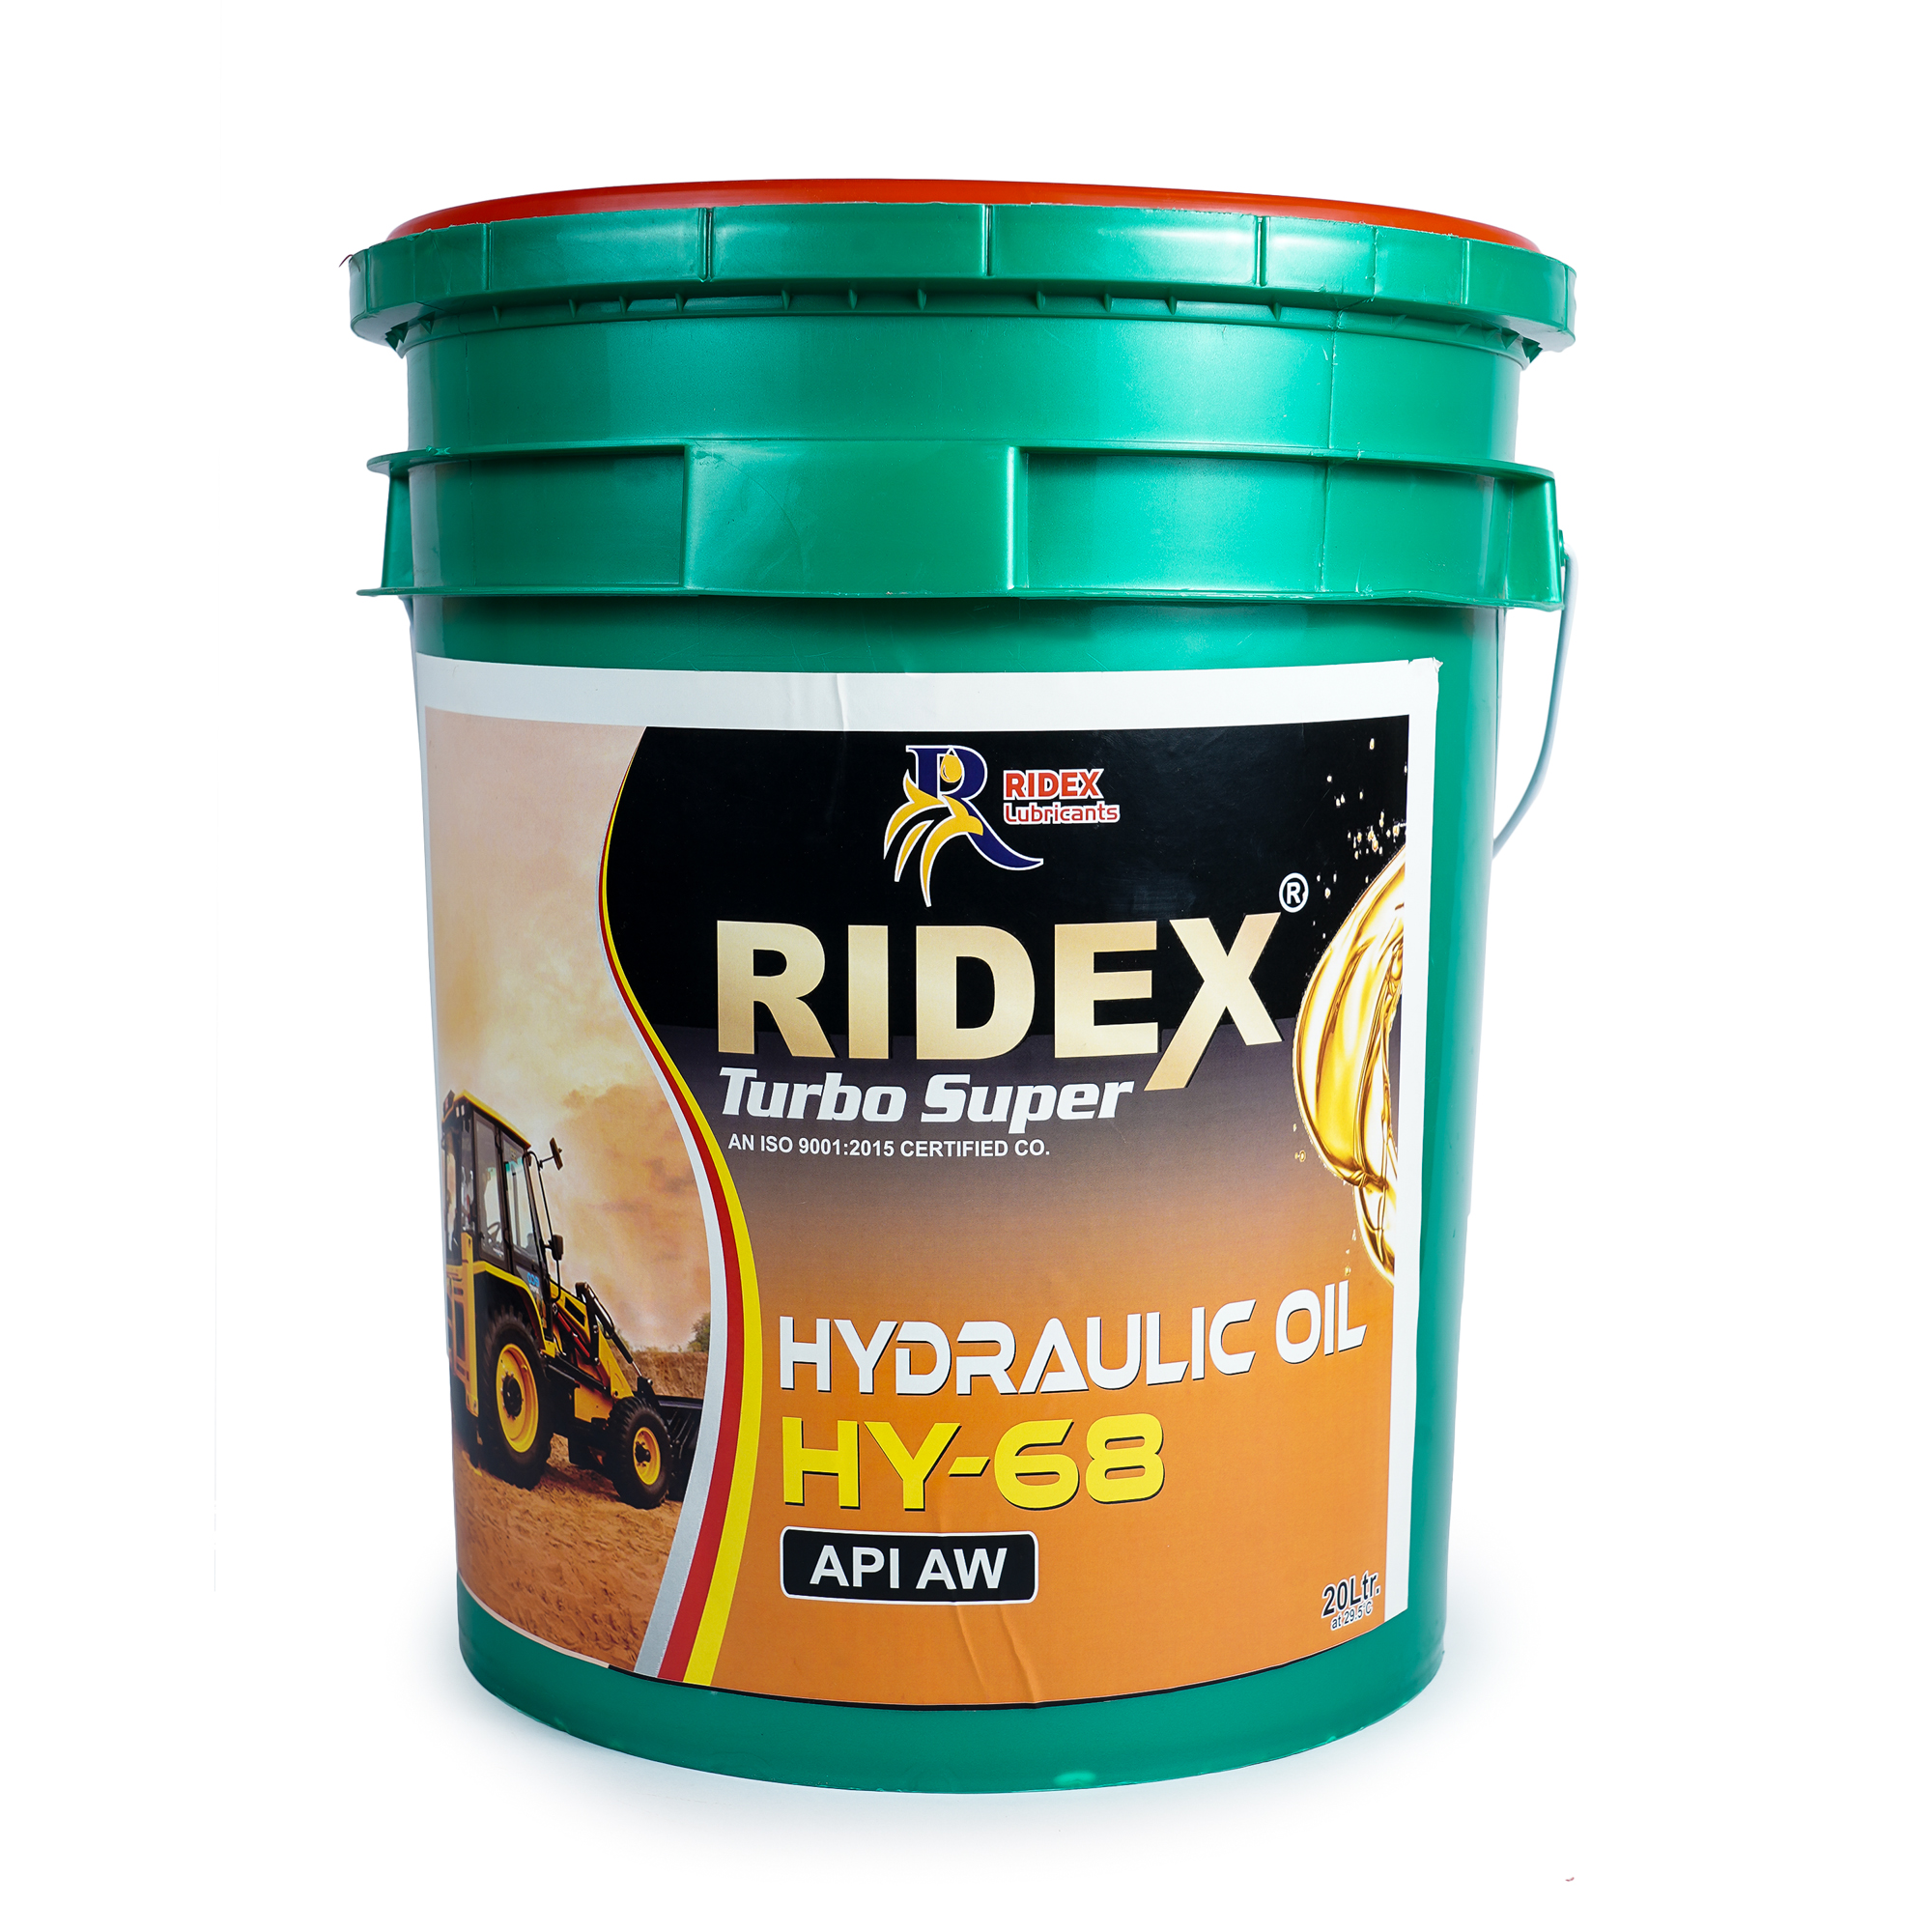 RIDEX TURBO SUPER HYDRAULIC OIL  HY-68 API AW